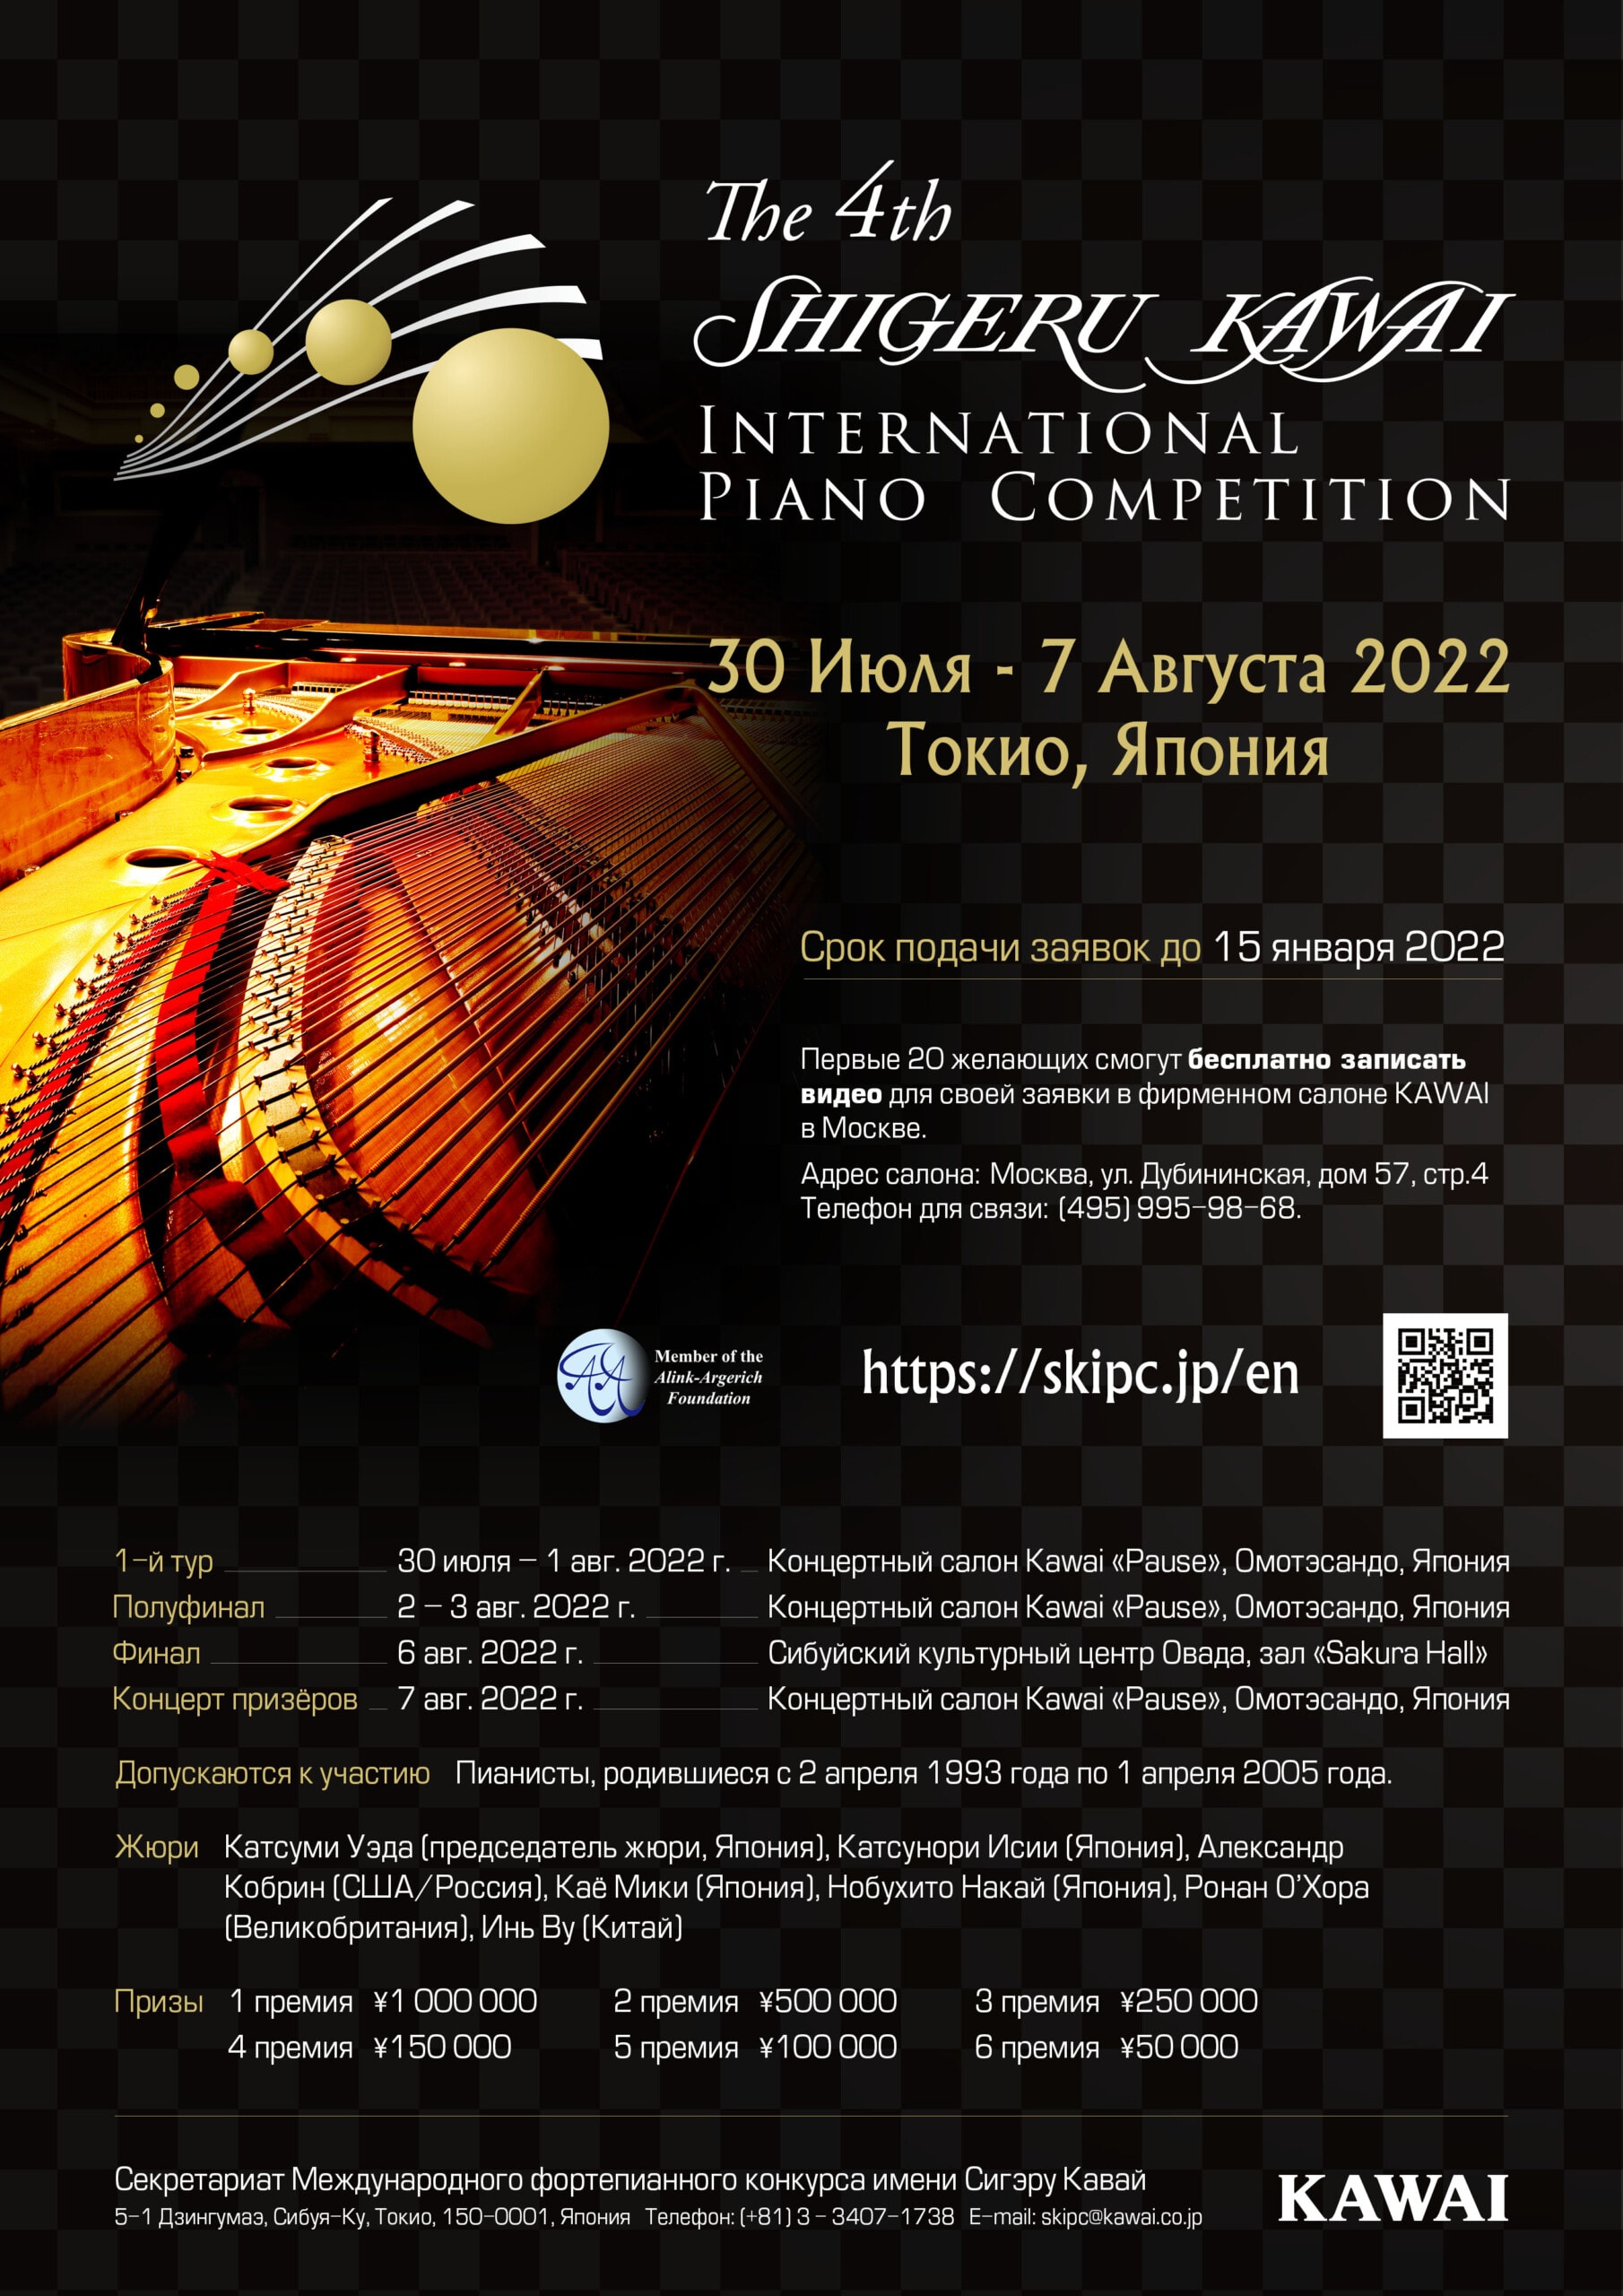 IV Международный конкурс пианистов имени Шигеру Каваи пройдет в Токио летом 2022 года